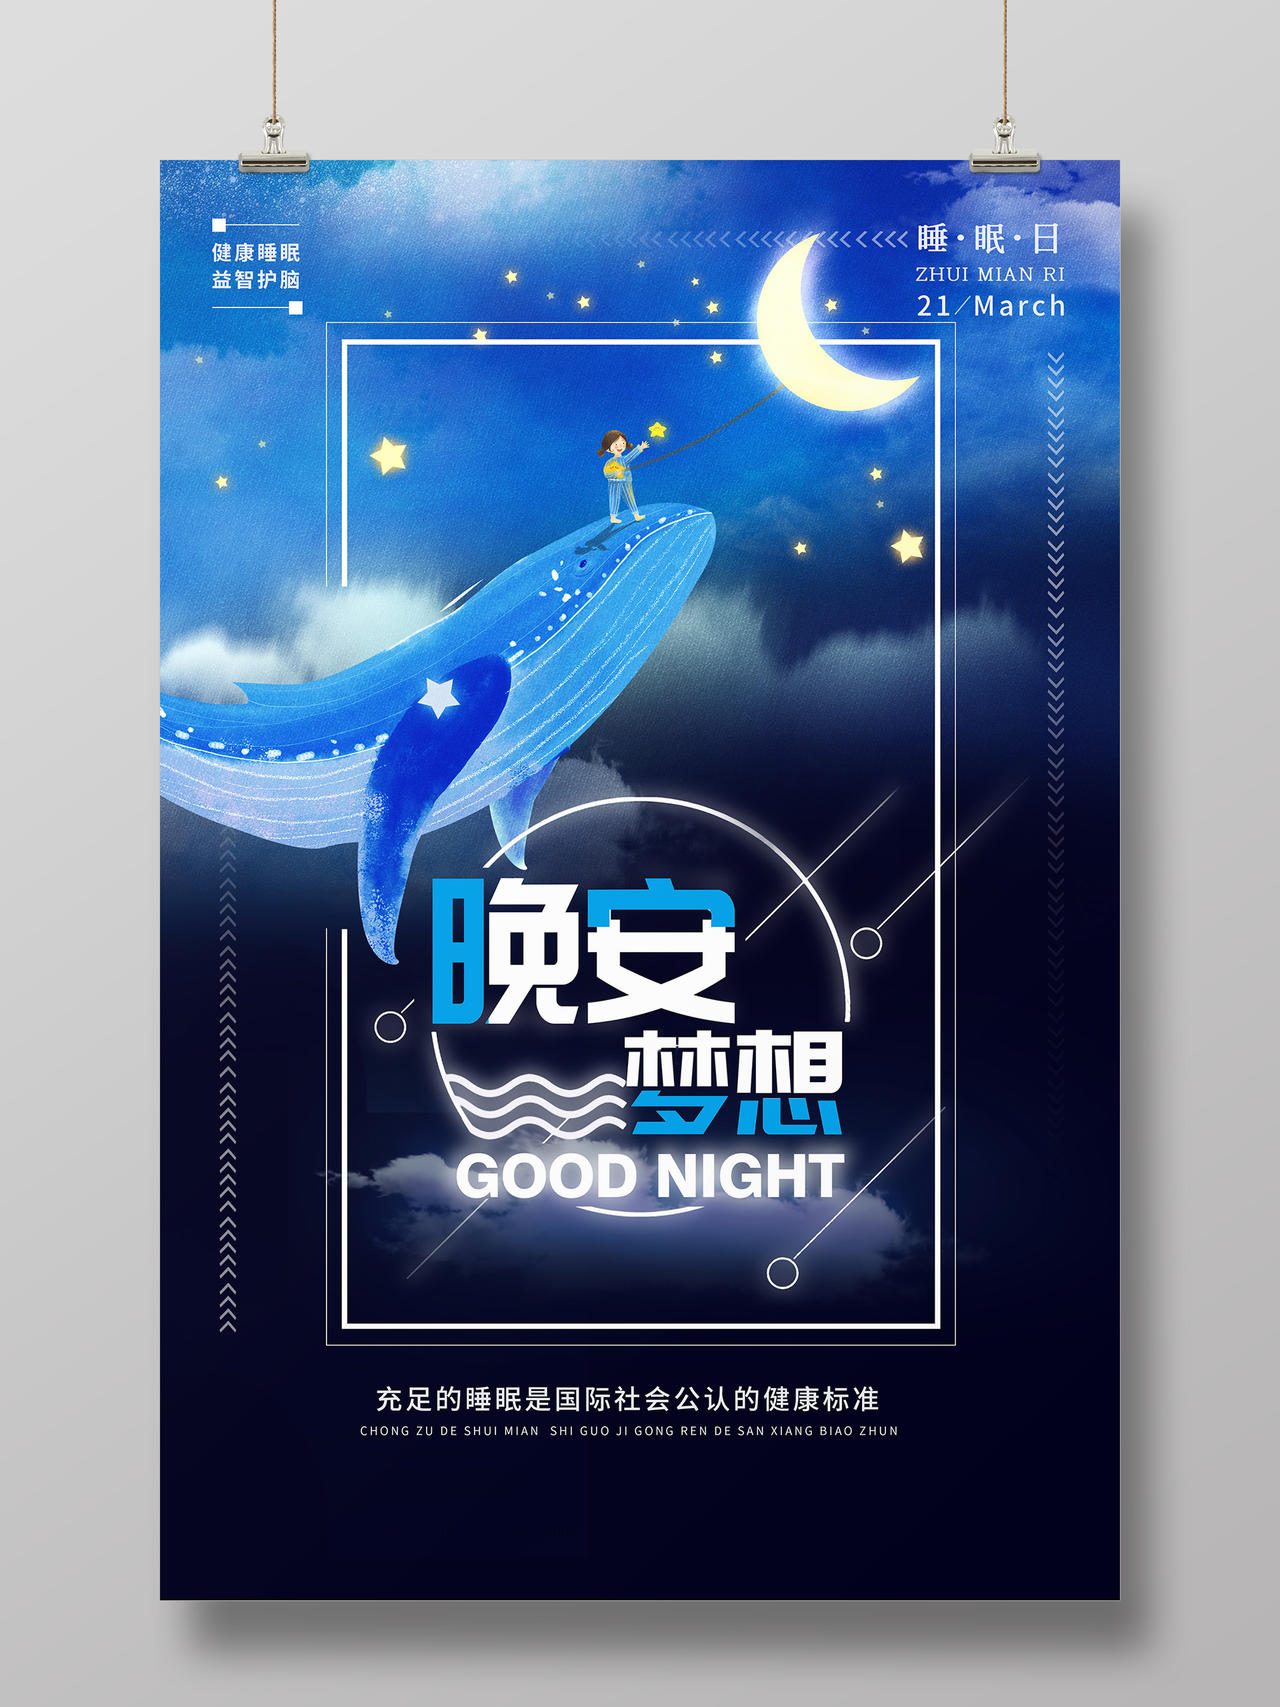 简约大气蓝色系卡通风晚安梦想世界睡眠日海报